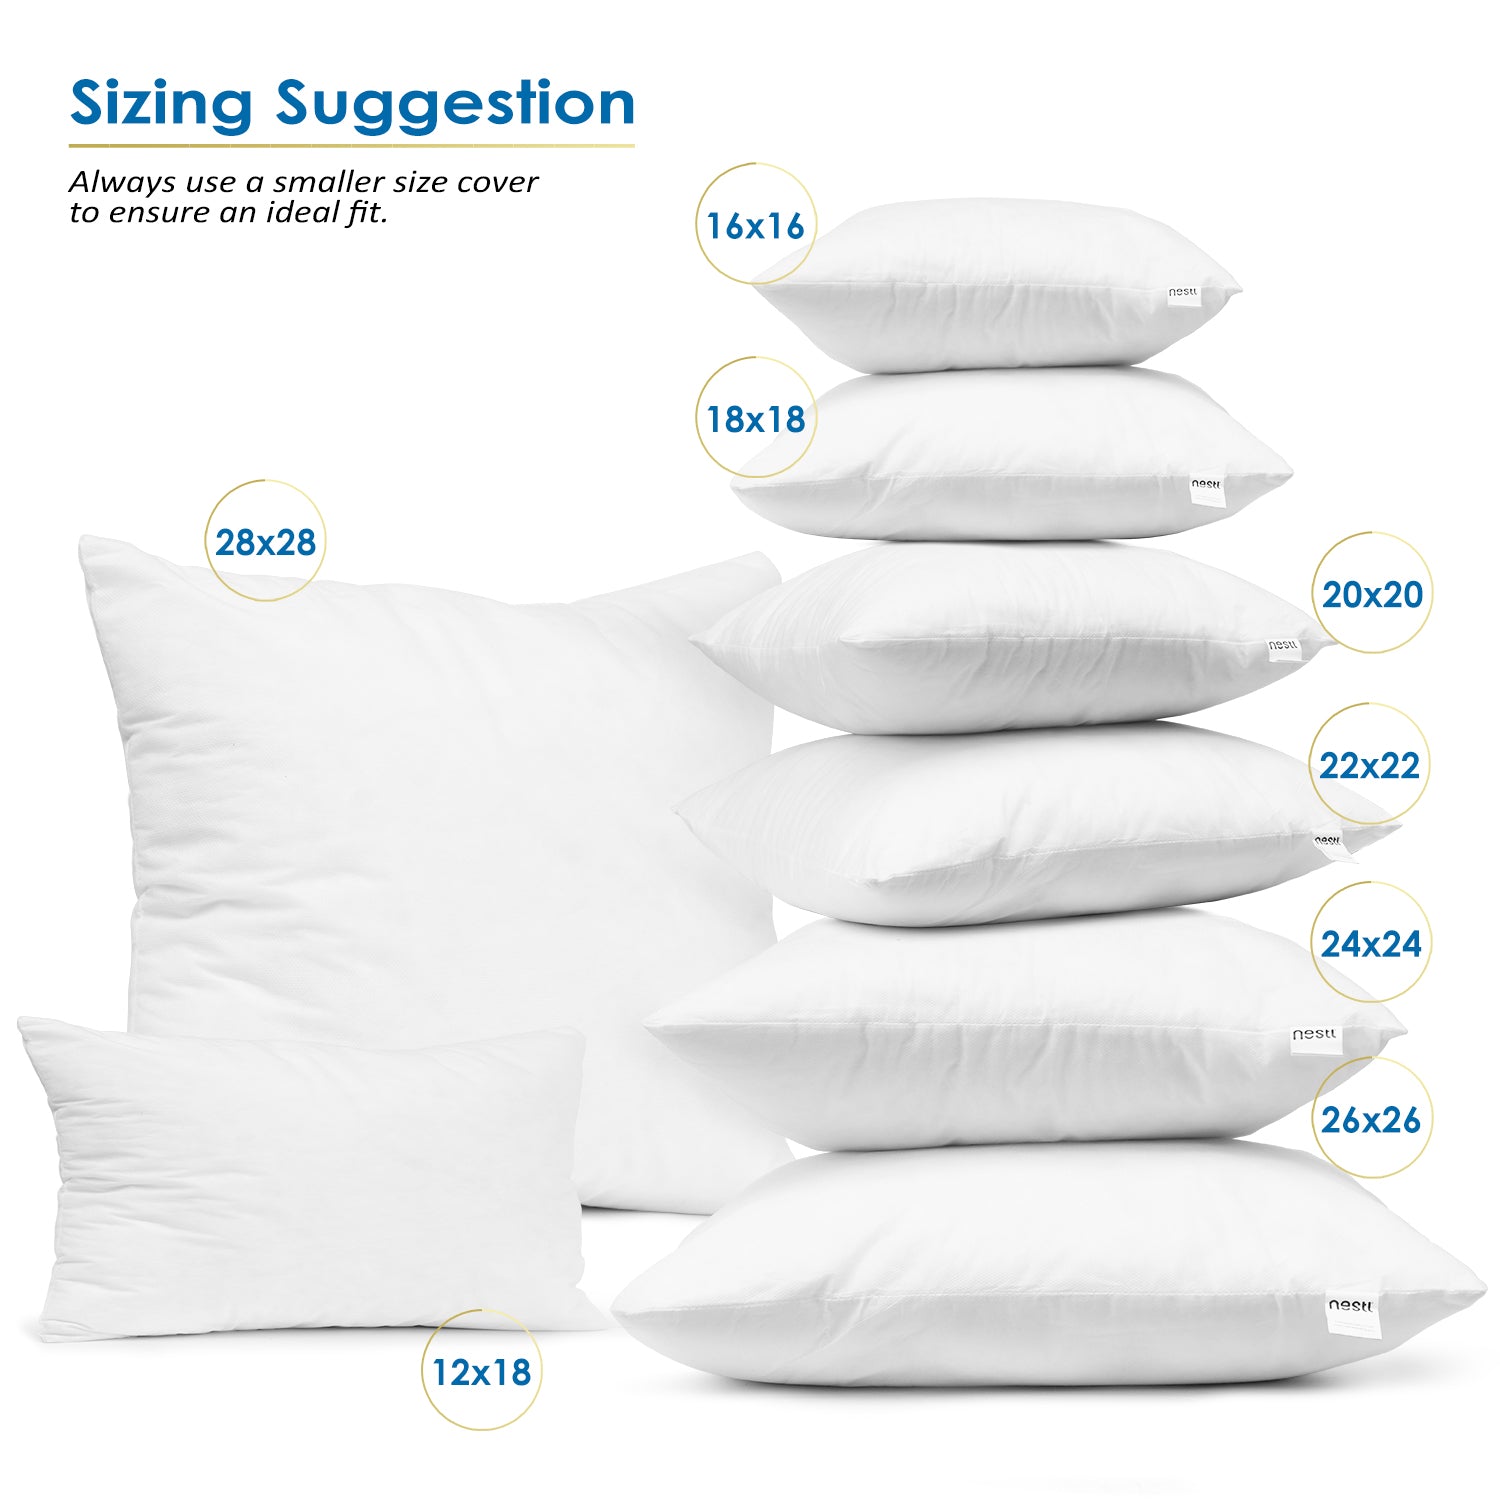 The Soft White Pintuck Extra Long Lumbar Throw Pillow-14 x 36